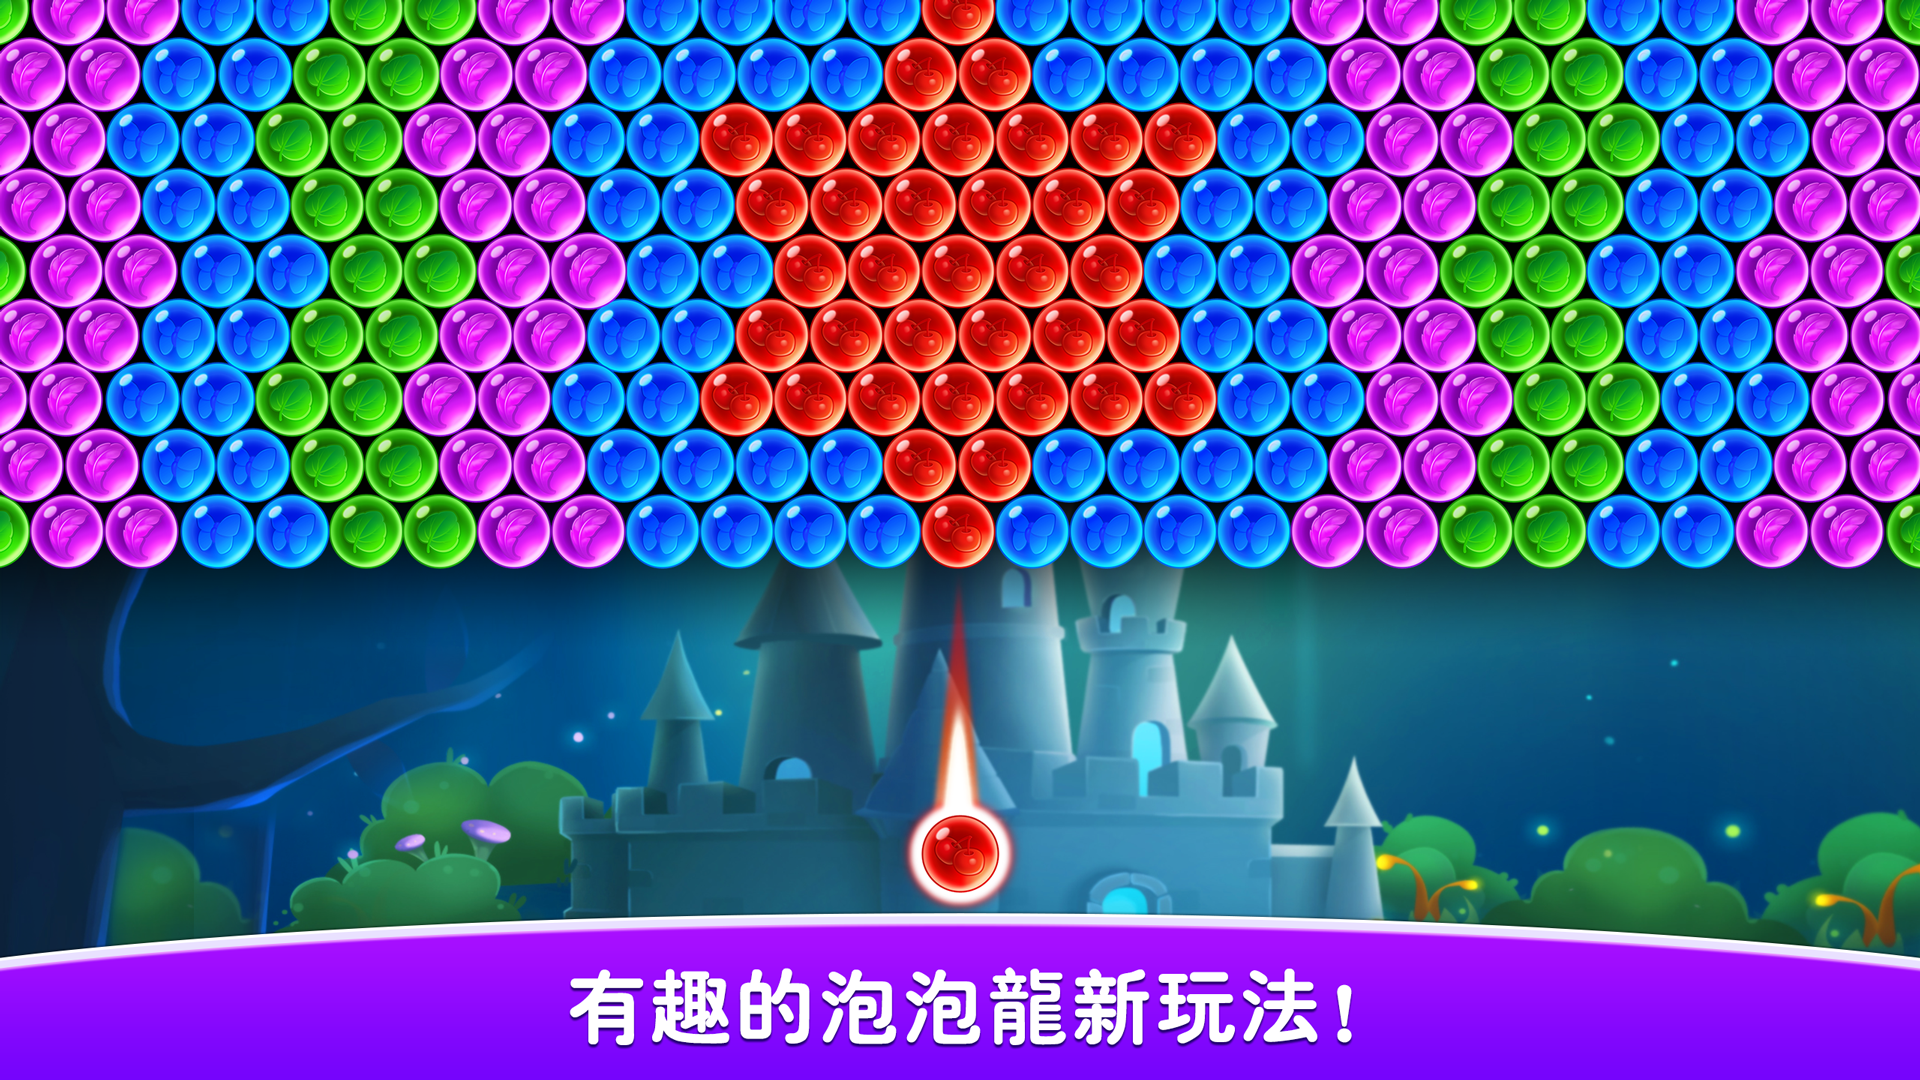 Screenshot 1 of 泡泡龍傳奇 2.78.0